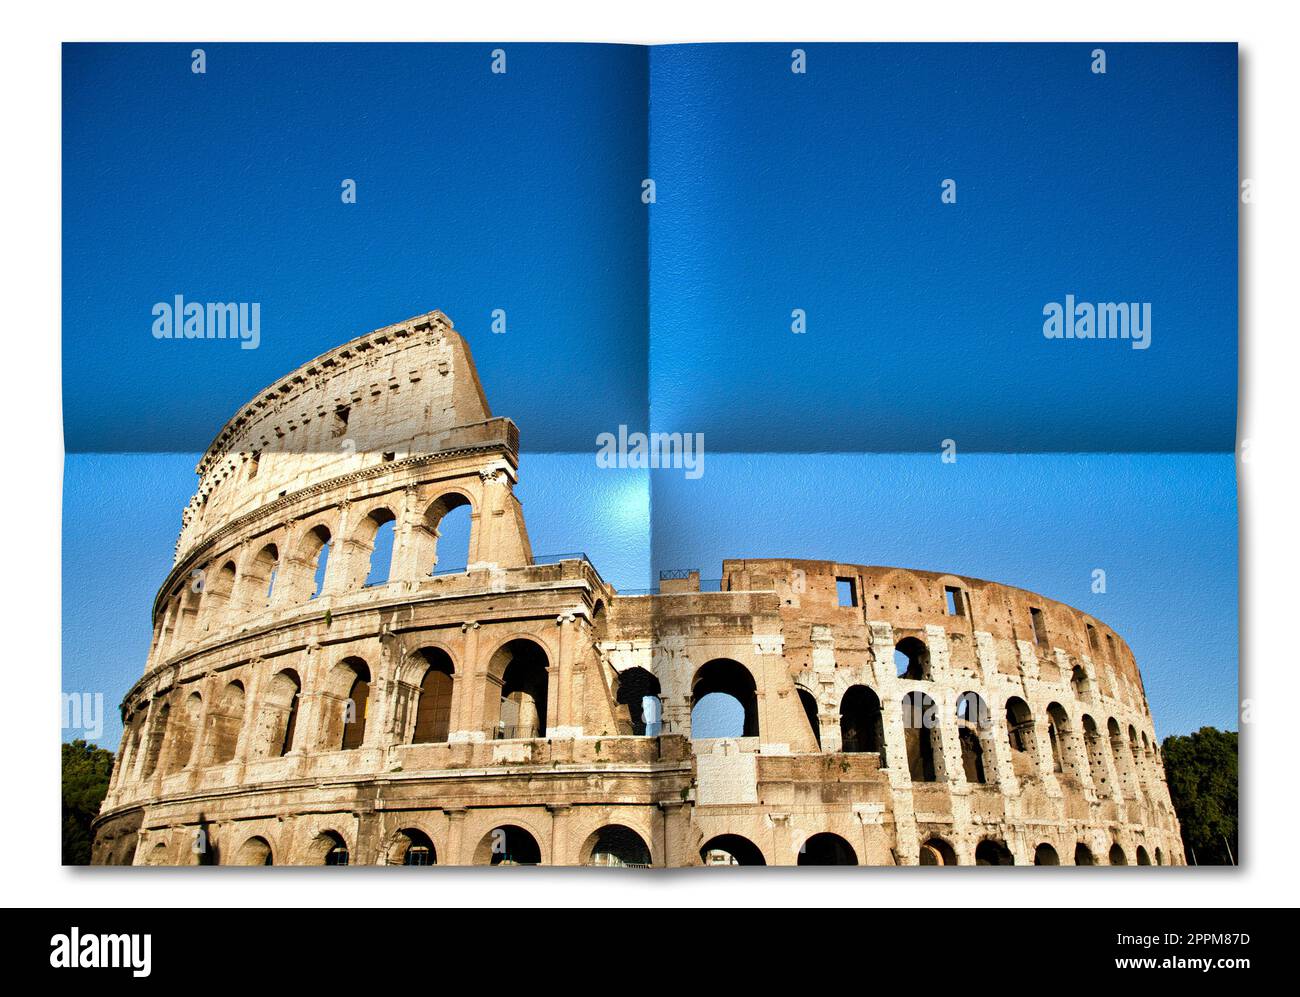 Italia, Roma - Colosseo Romano con cielo blu, il più famoso monumento italiano. Foto Stock